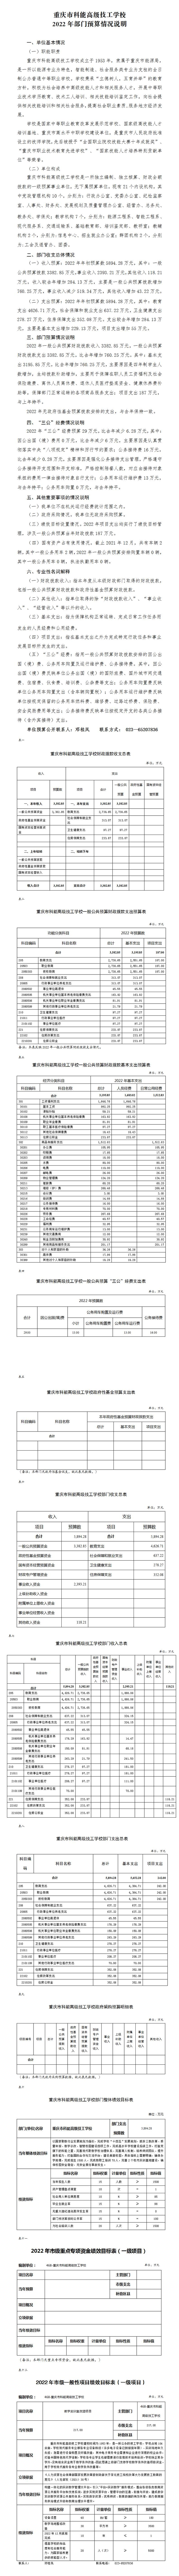 重庆市科能高级技工学校2022年部门预算公开.jpg